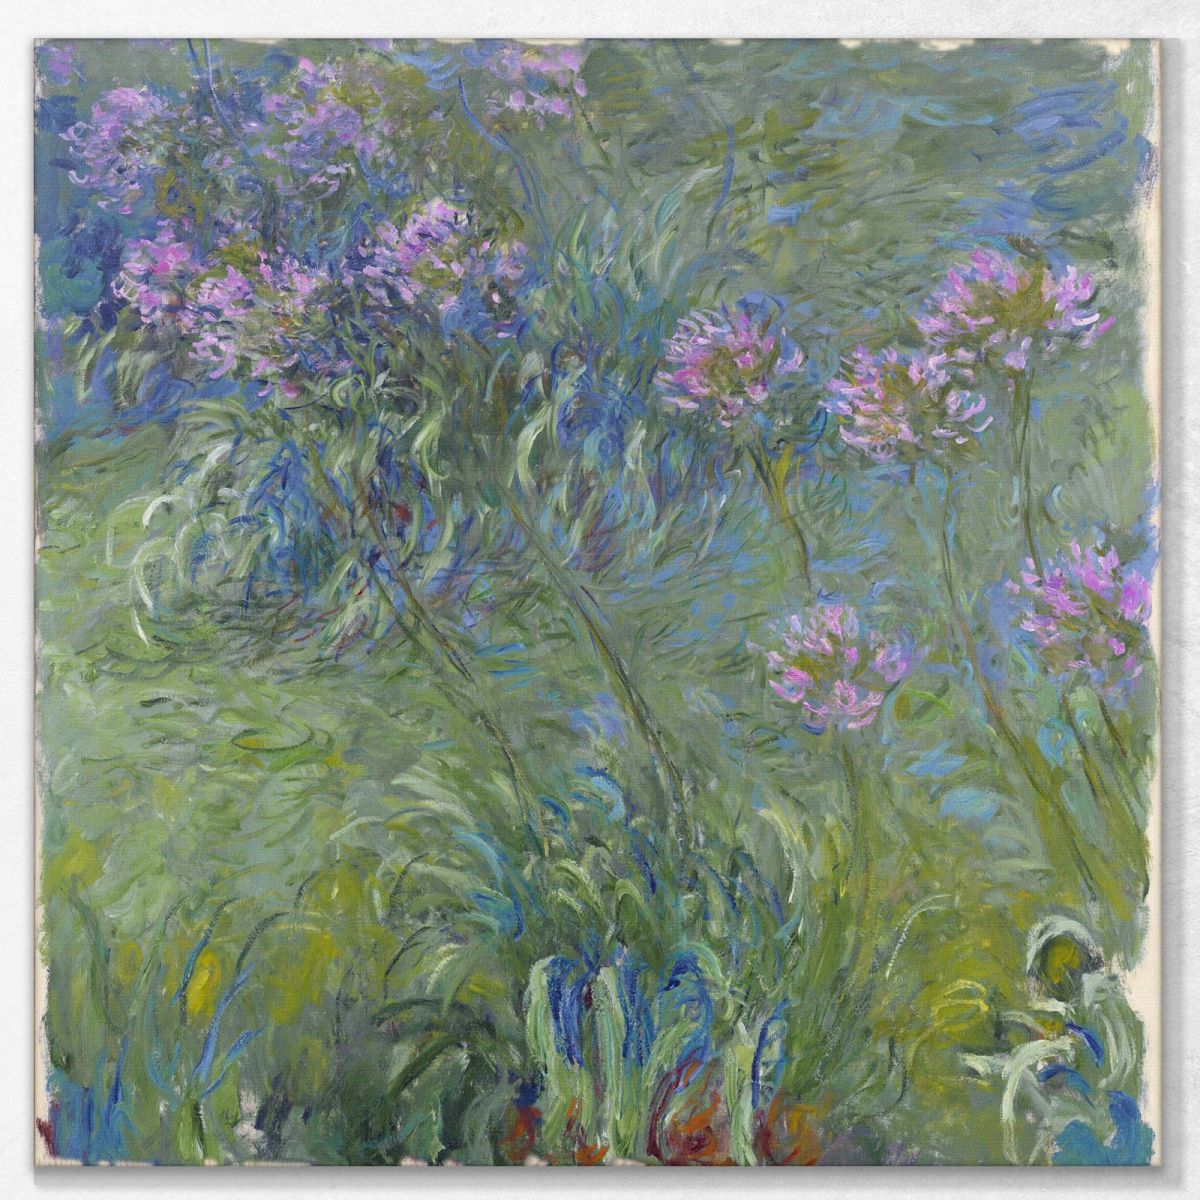 Agapanthus Flowers, 1914 Monet Claude canvas print mnt2